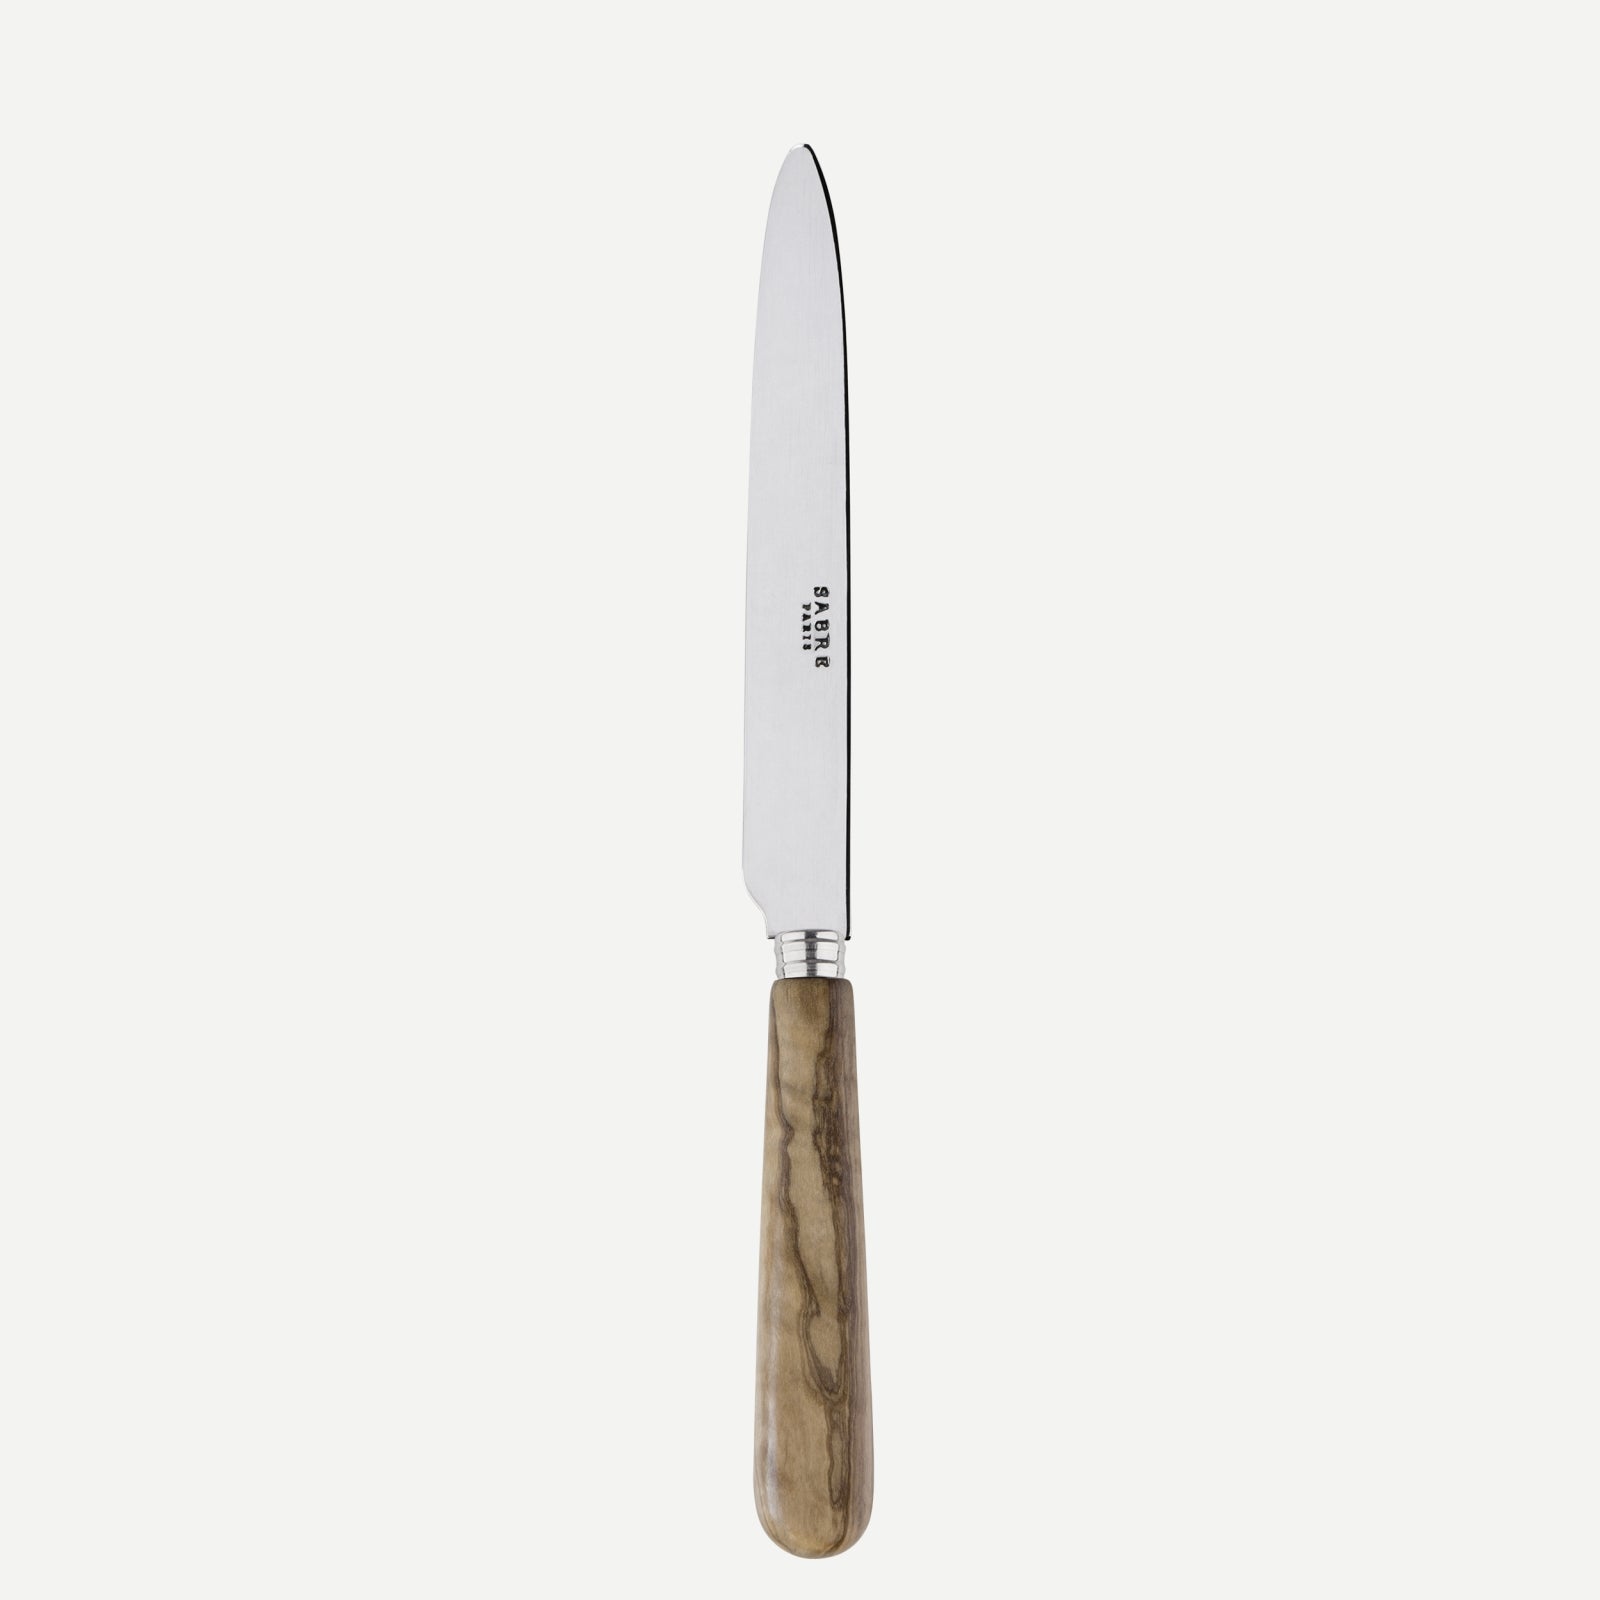 Dinner knife - Lavandou - Olive tree wood